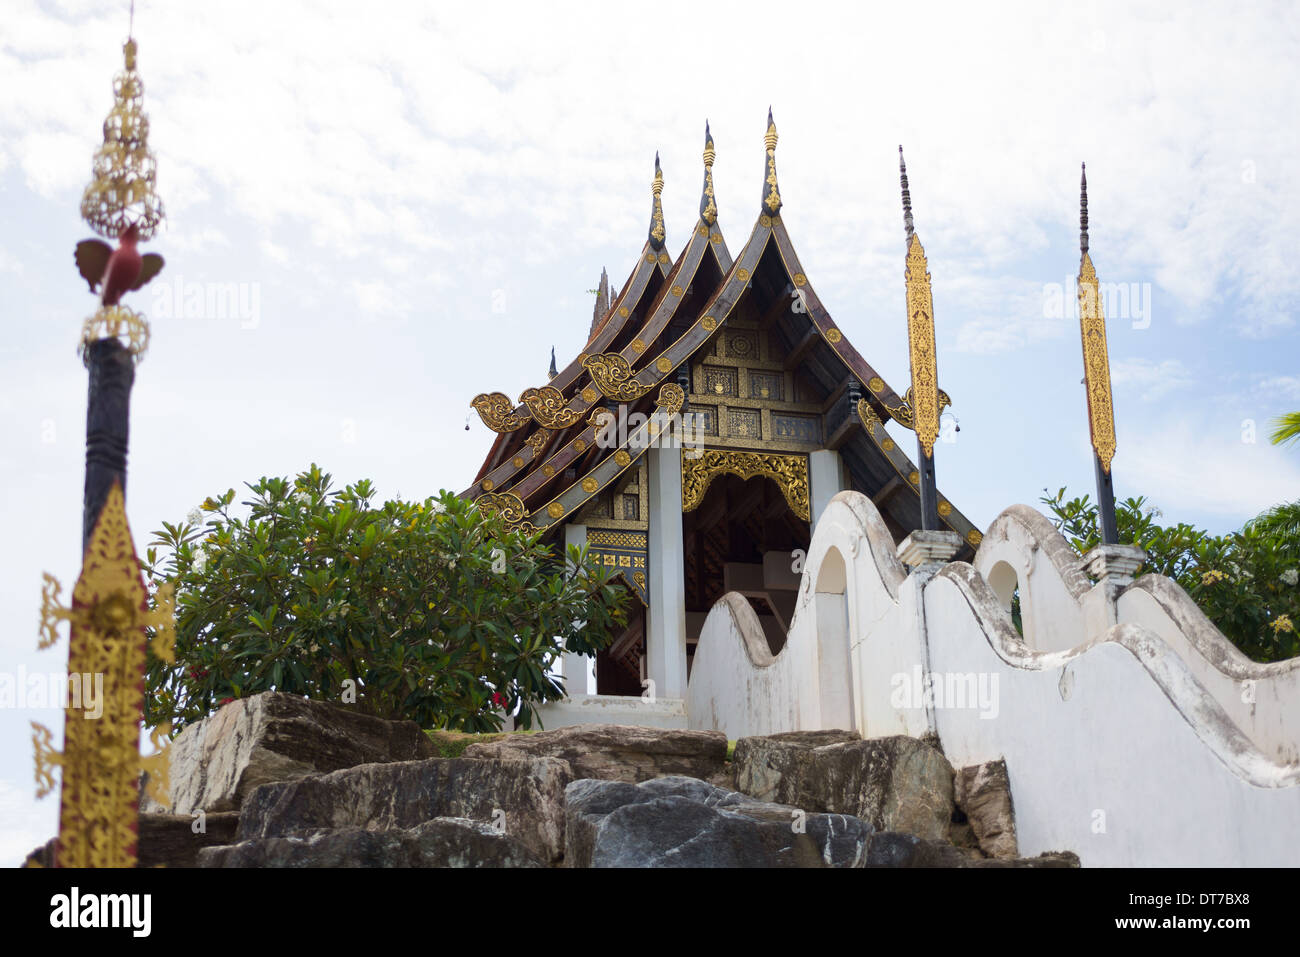 Thai Gazebo, Asian Architecture, Nong Nooch Tropical Garden, Thailand Stock Photo